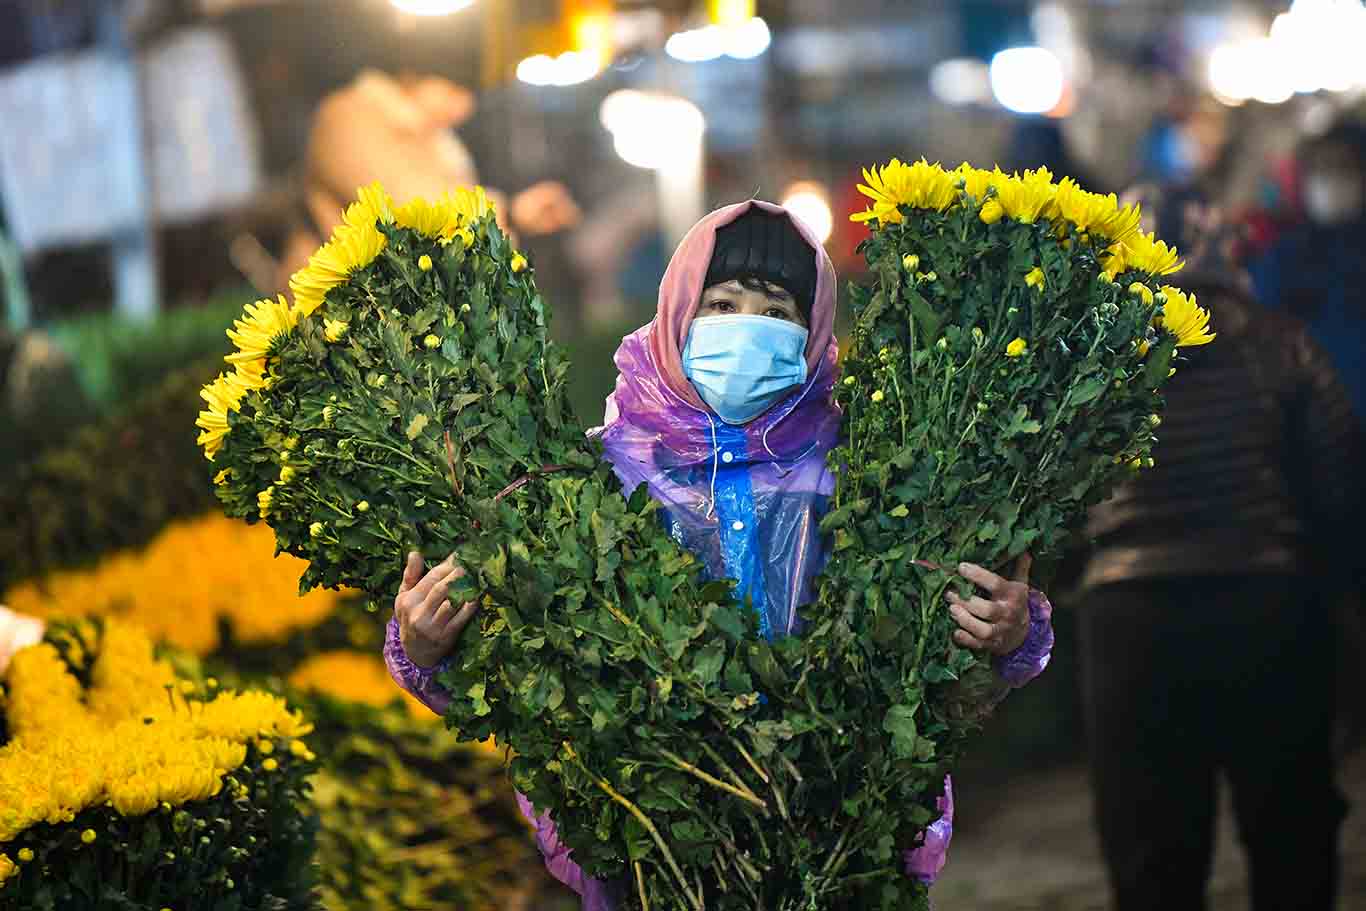 Chỉ còn hơn chục ngày nữa là tới Tết Nguyên đán, nhưng hoa đào bày bán tại chợ Quảng Bá khá thưa thớt. 